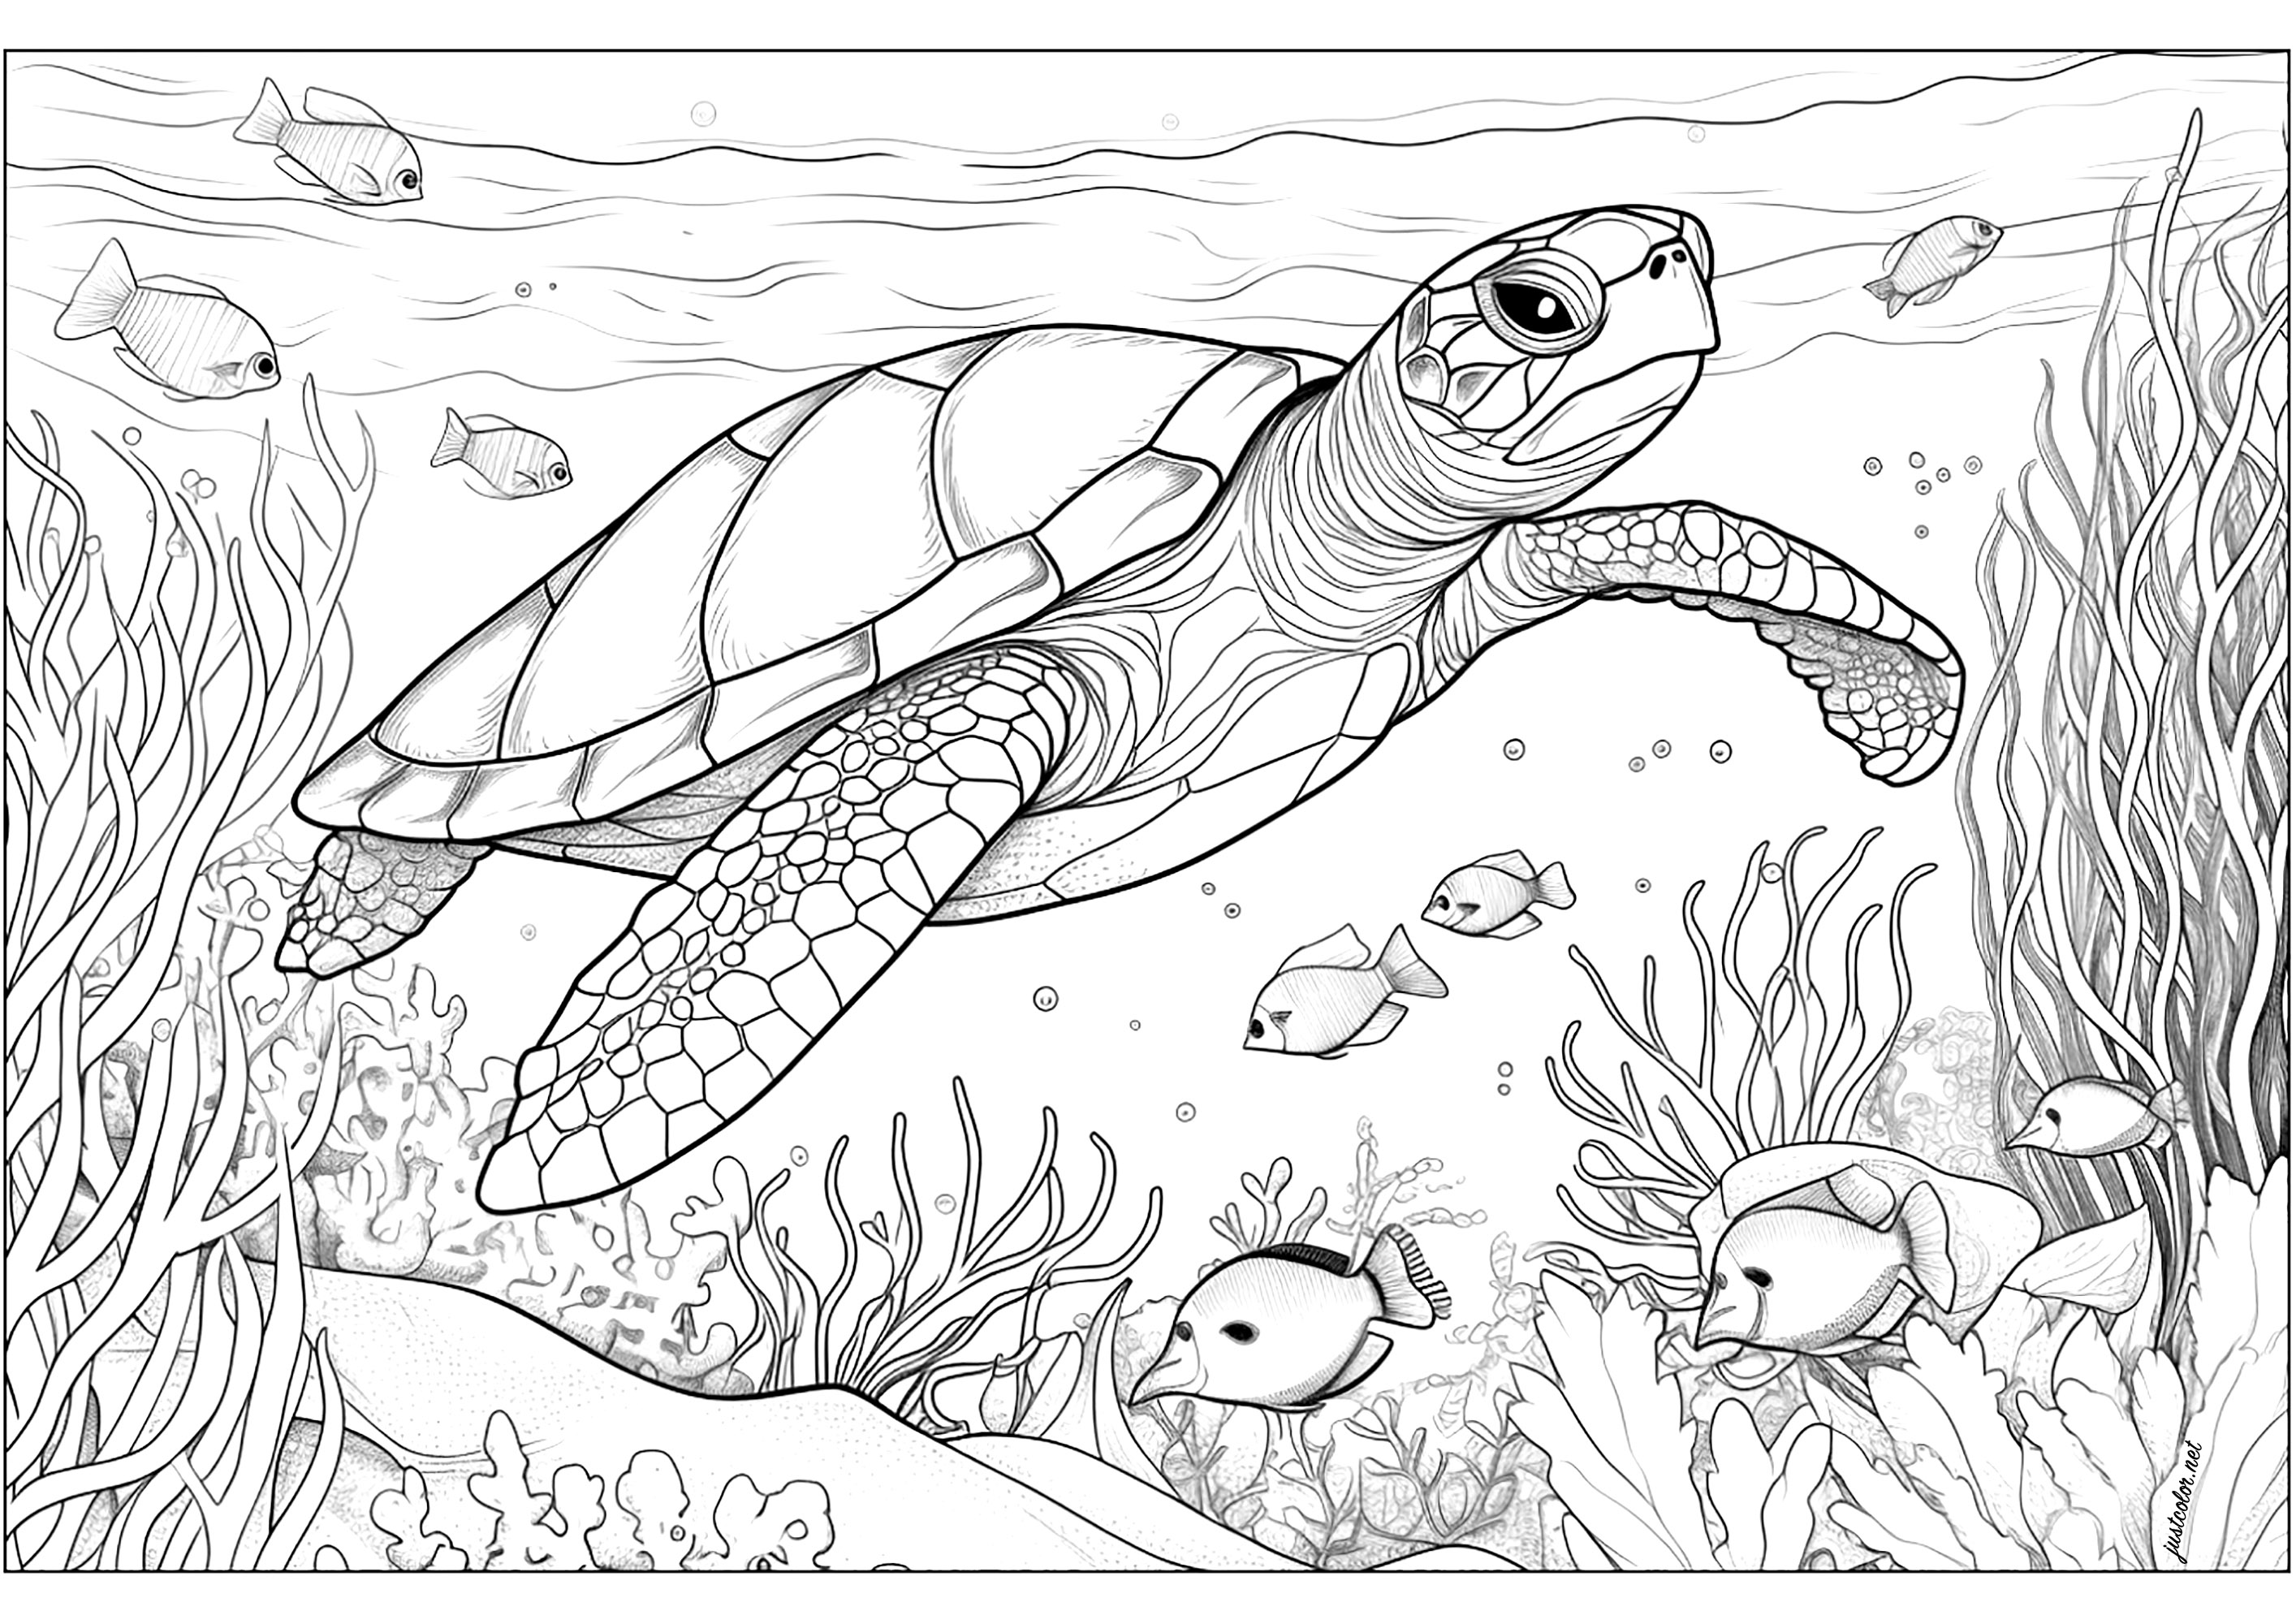 Meeresschildkröte mit Seetang und Fisch. Um die Schildkröte herum ist Seegras verstreut, das sich langsam bewegt, während Fische fröhlich um sie herumschwimmen.